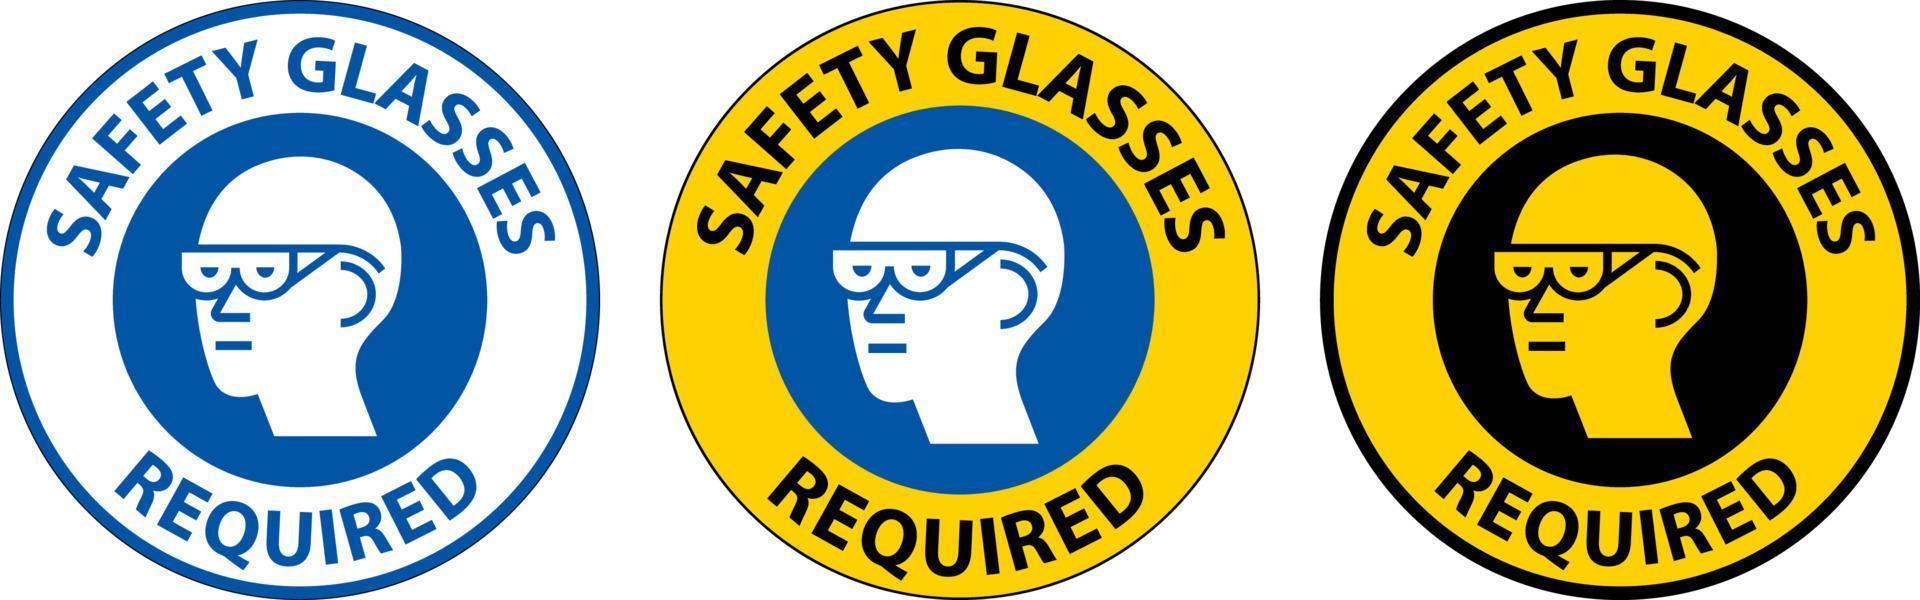 panneau au sol, lunettes de sécurité obligatoires vecteur